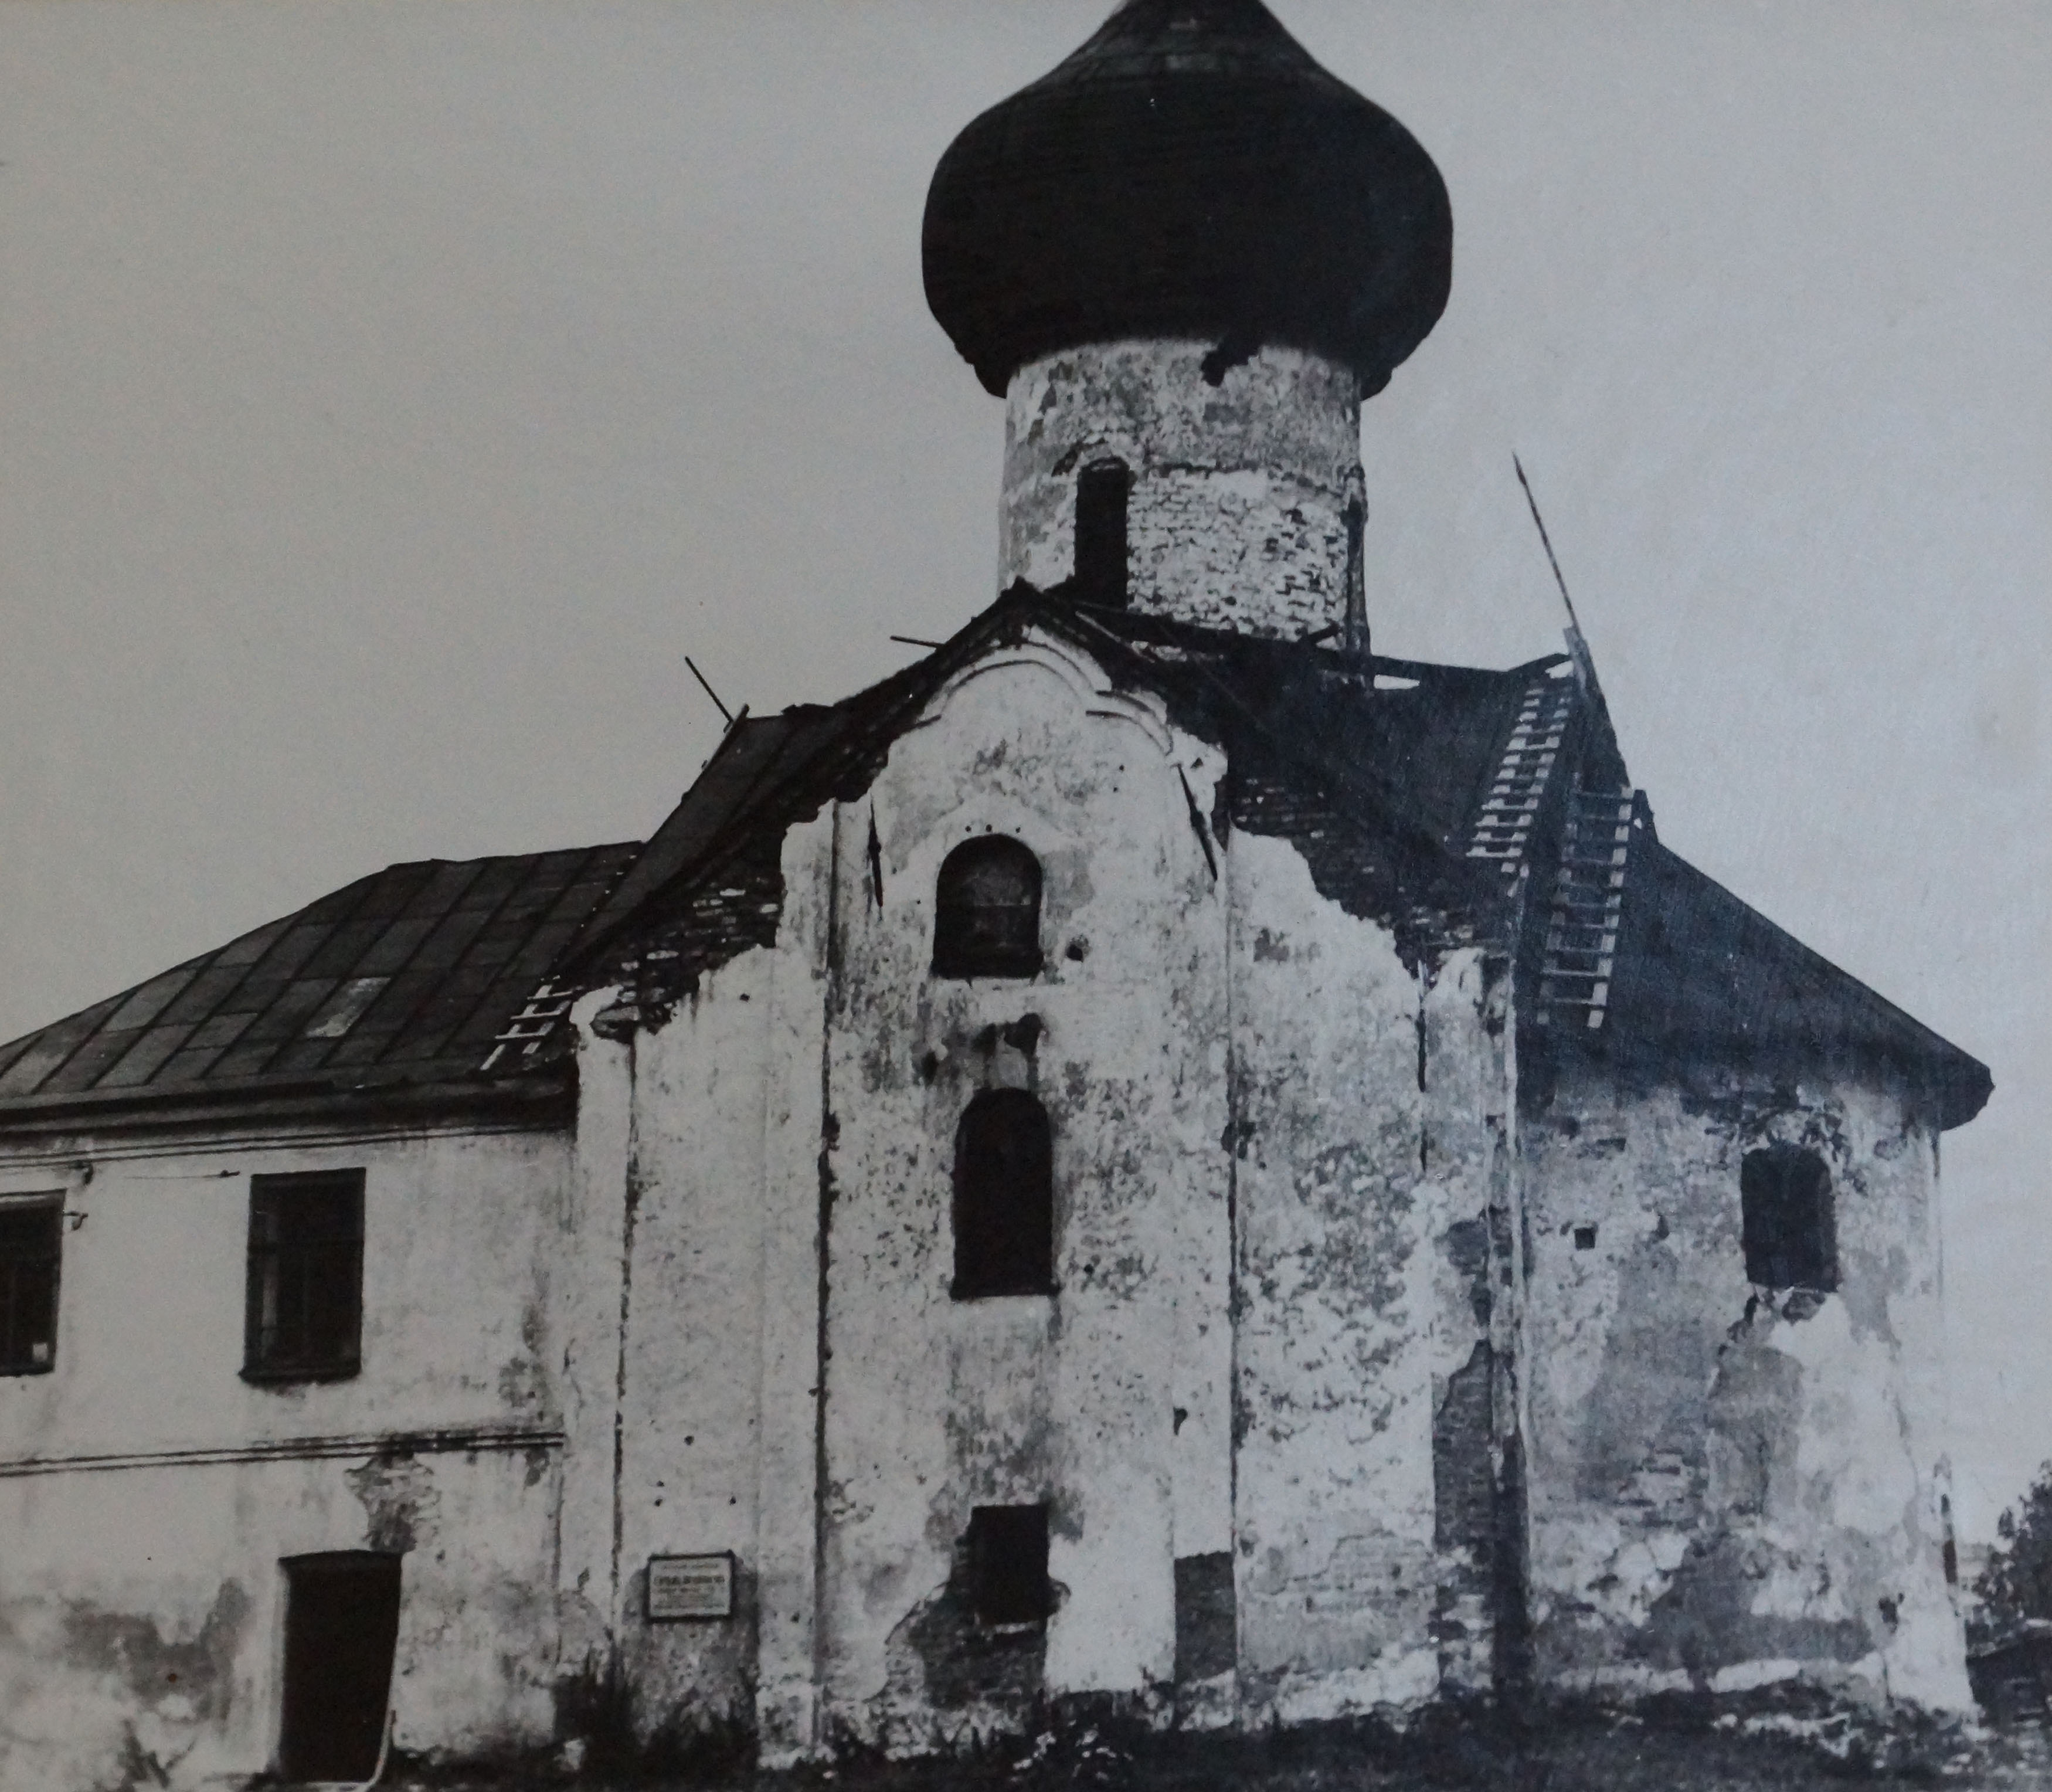 Великий Новгород. Зверин монастырь. Церковь Симеона Богоприимца. Вид с юга до реставрации.